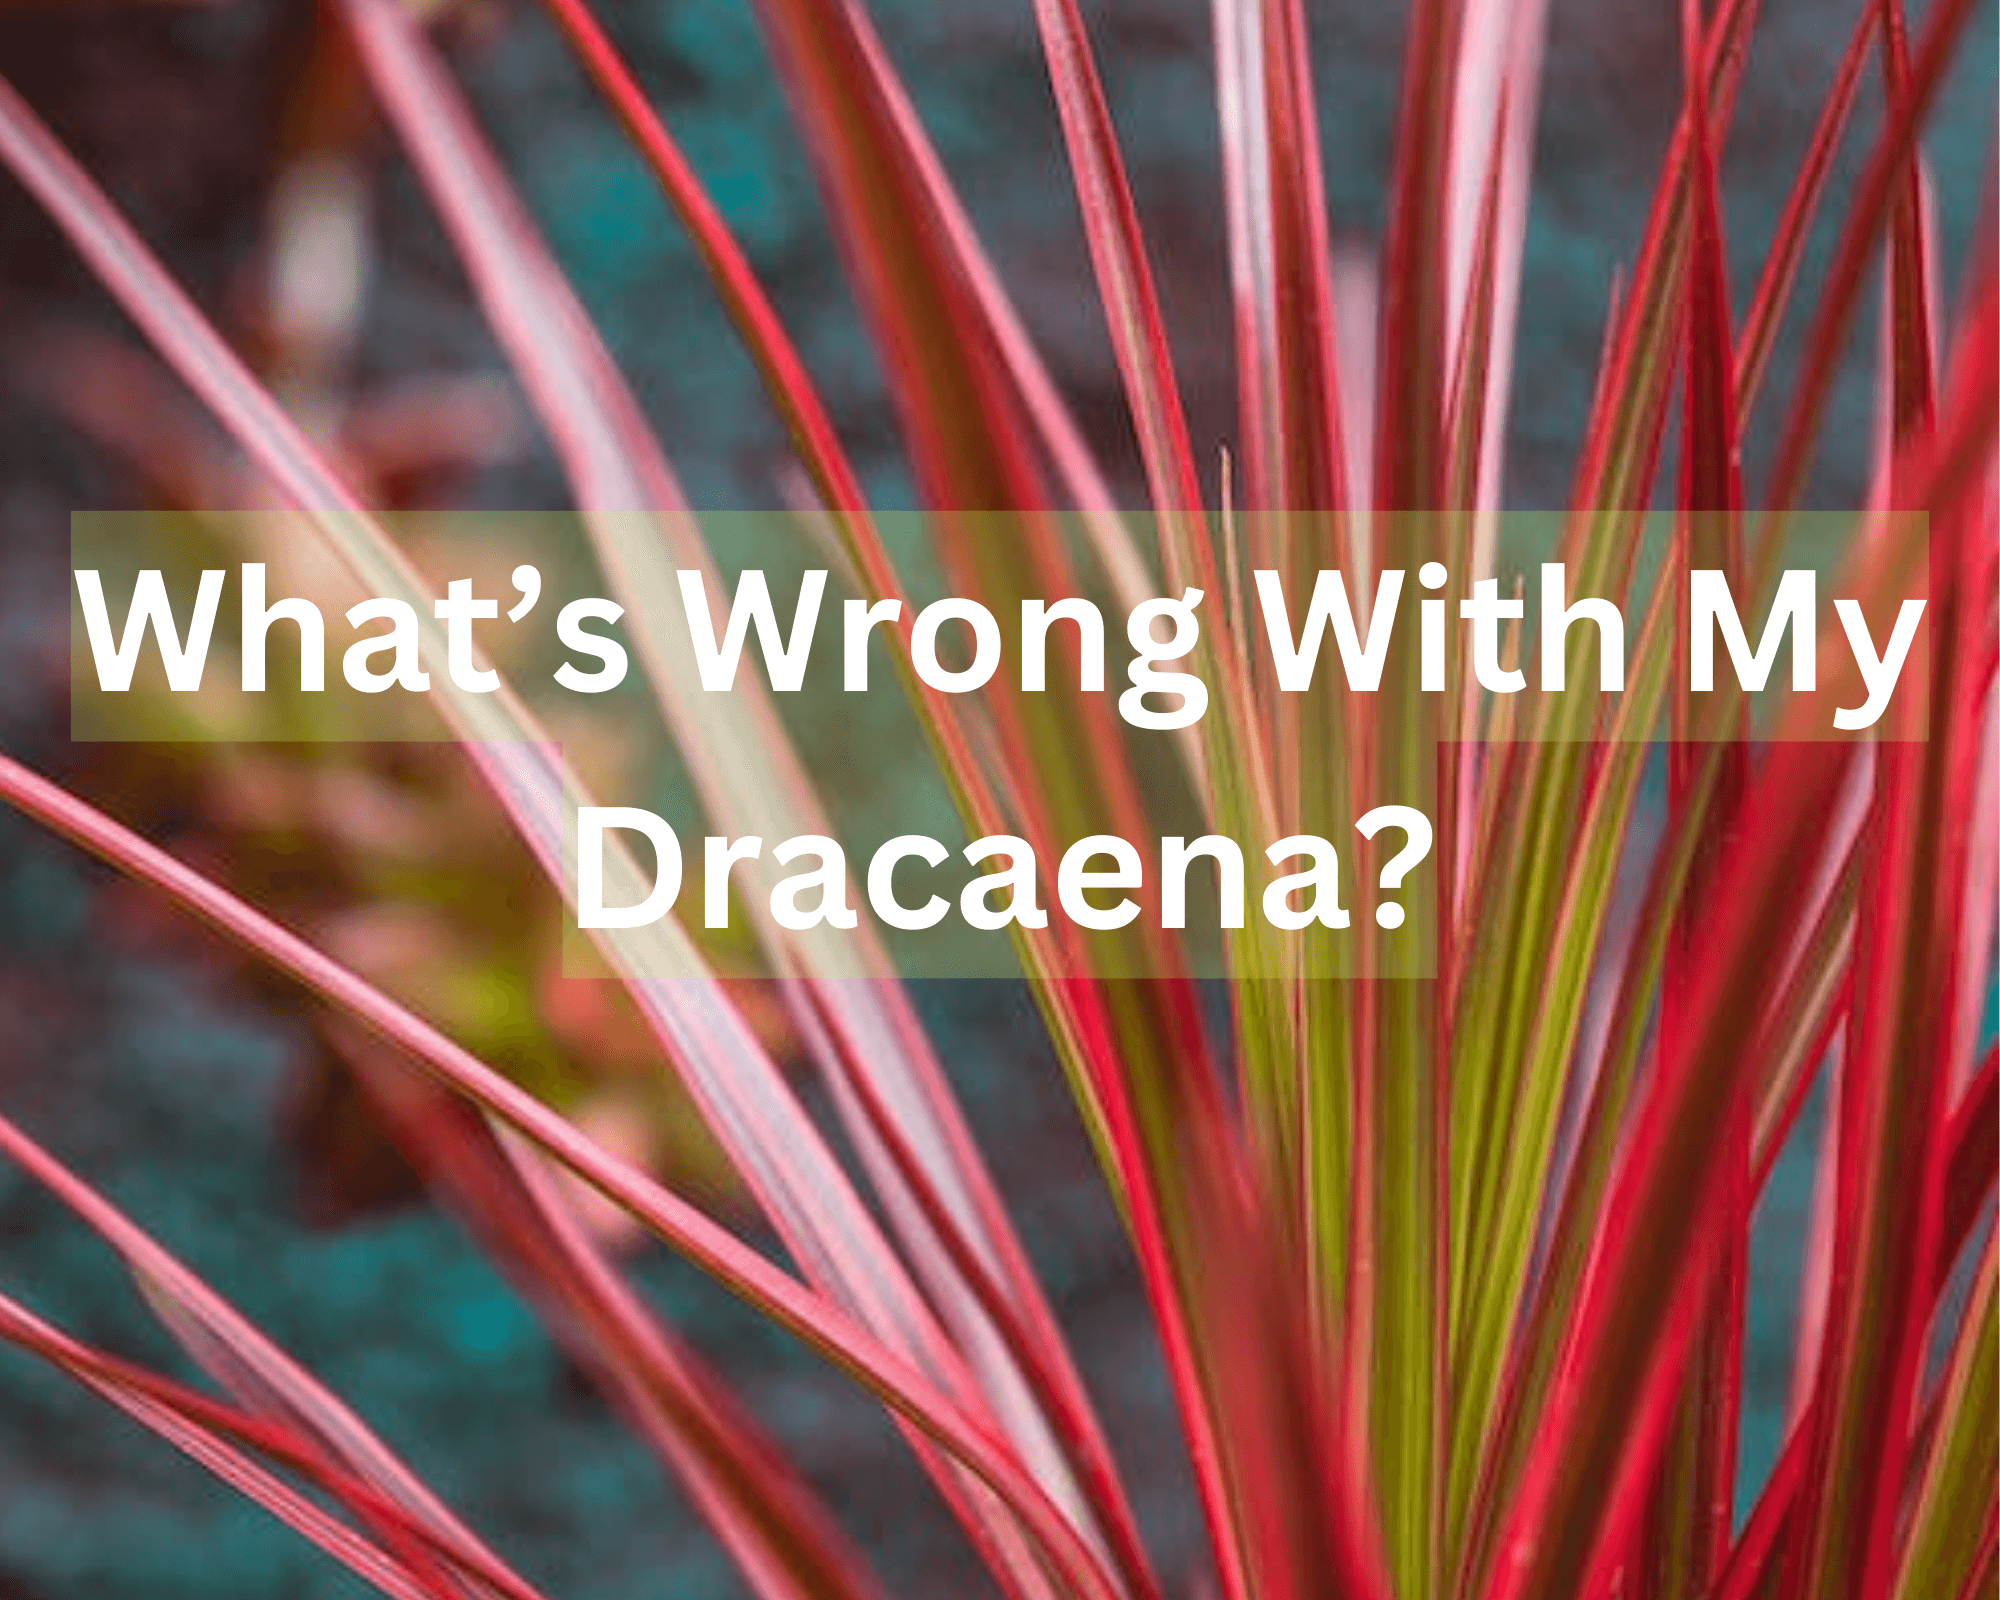 Common Dracaena Problems